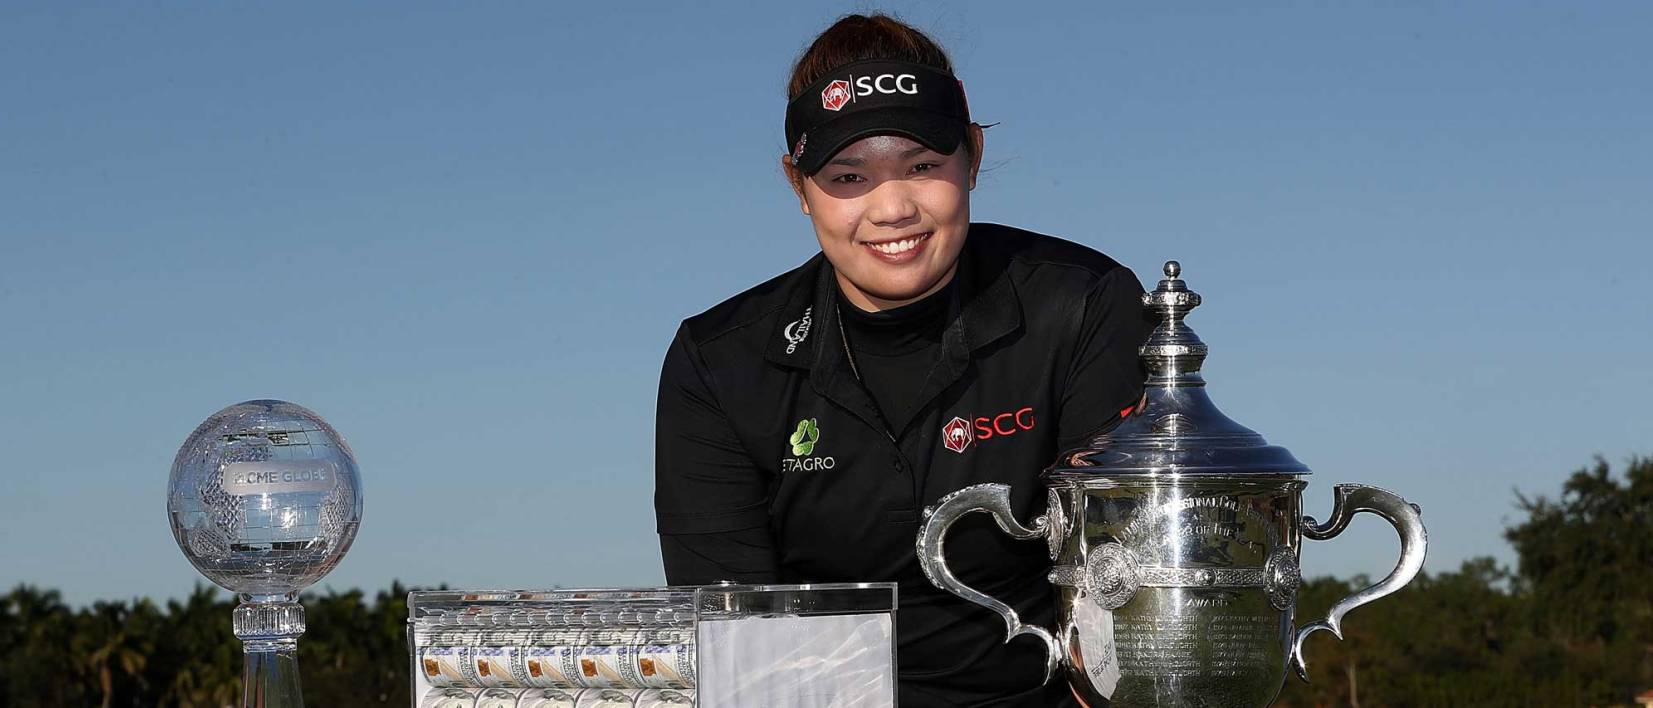 Nhận giải LPGA Tour's Player of the Year - Ariya Jutanugarn đưa Thái Lan lên đỉnh cao thế giới